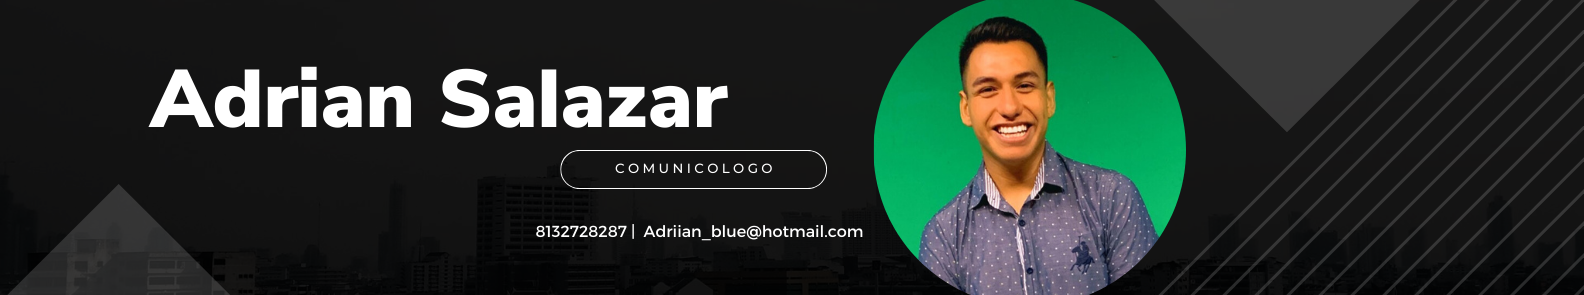 Adrian Salazar profil başlığı